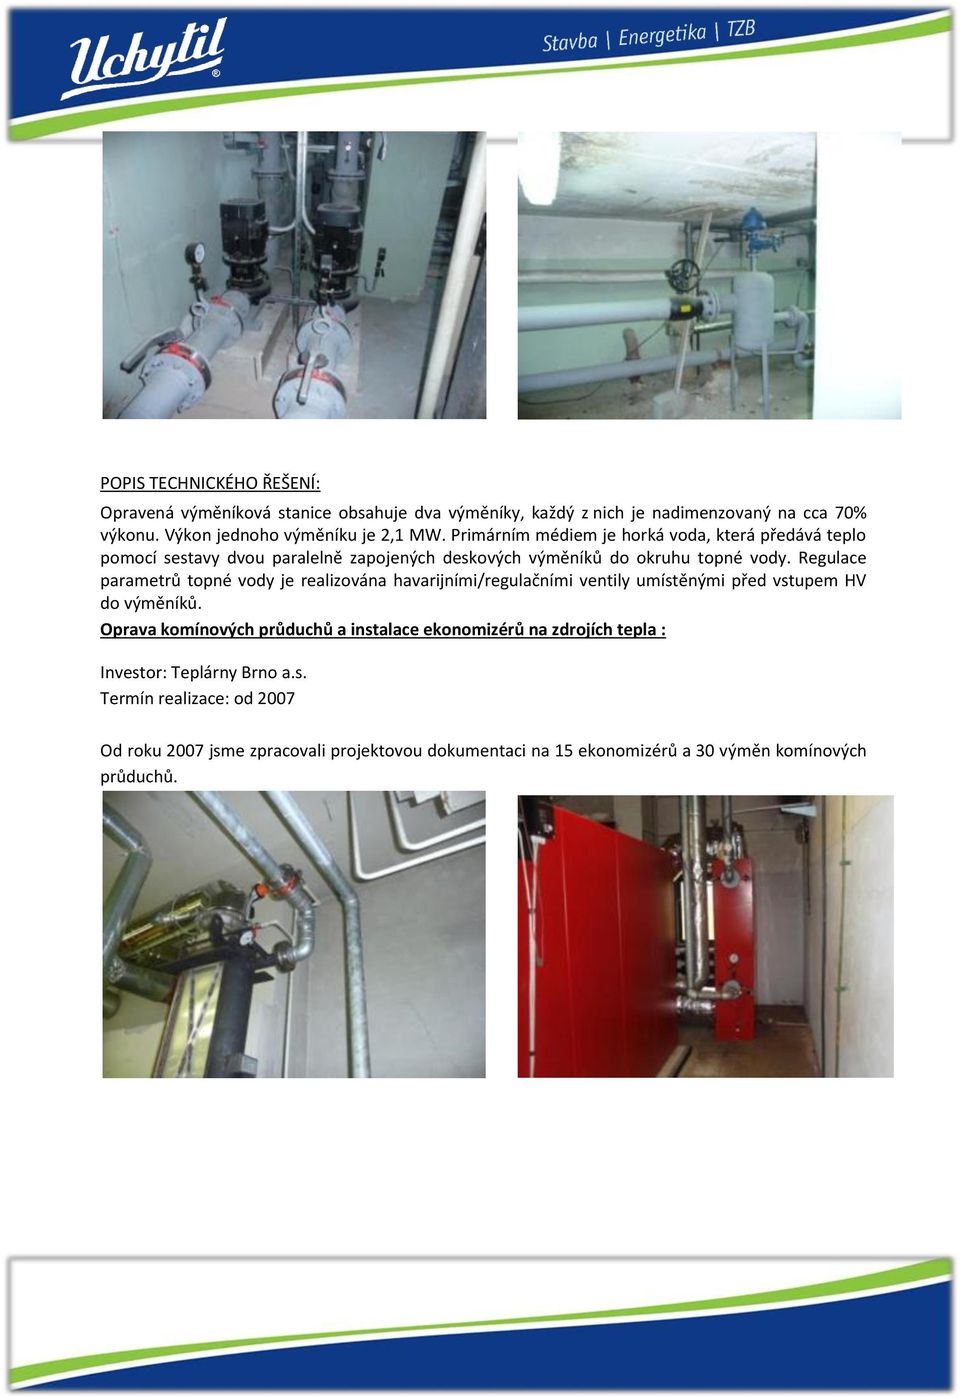 Regulace parametrů topné vody je realizována havarijními/regulačními ventily umístěnými před vstupem HV do výměníků.